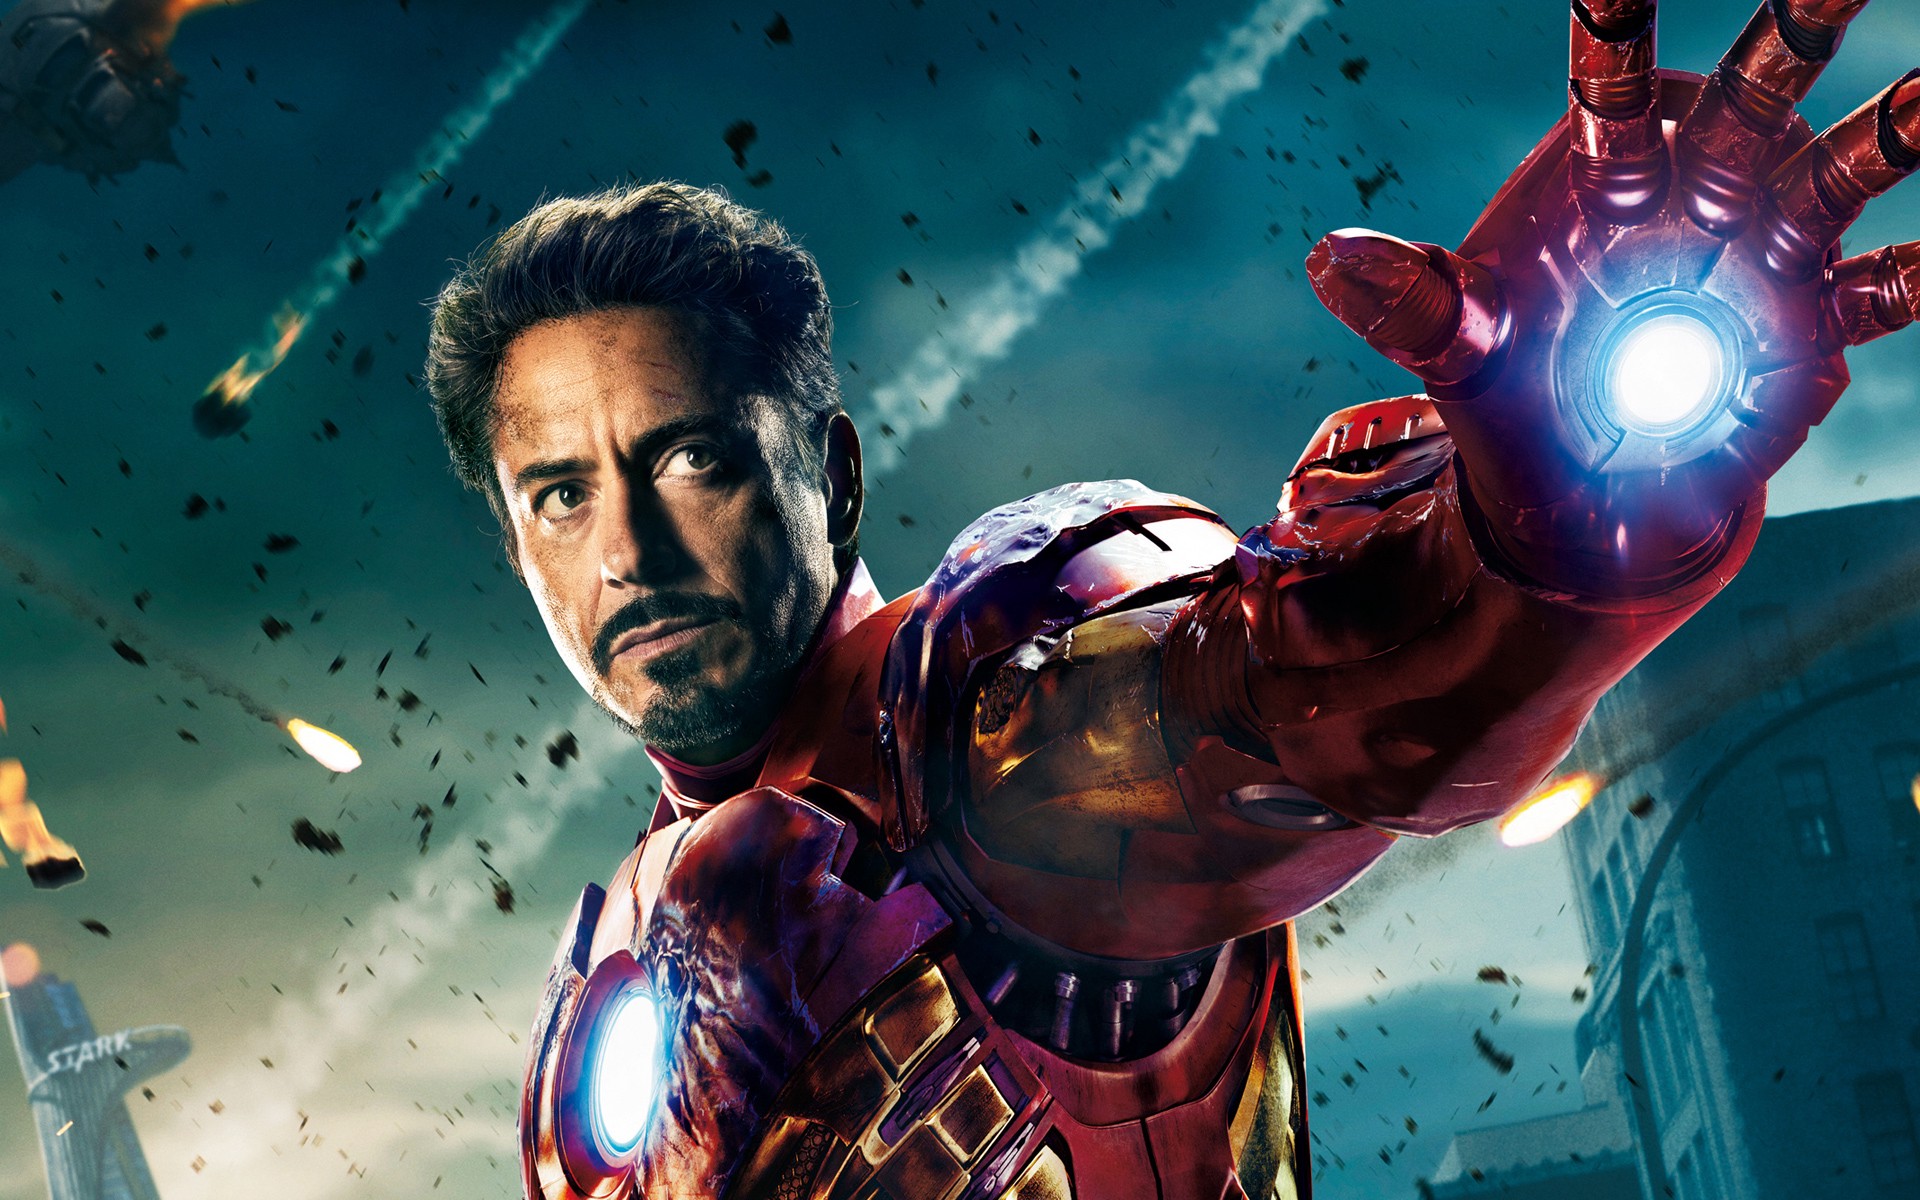 Disney Ra Mắt Đoạn Video Tổng Hợp Lại Tất Tần Tật Những Mẫu Áo Giáp Mà Iron  Man Từng Sử Dụng Trong Mcu